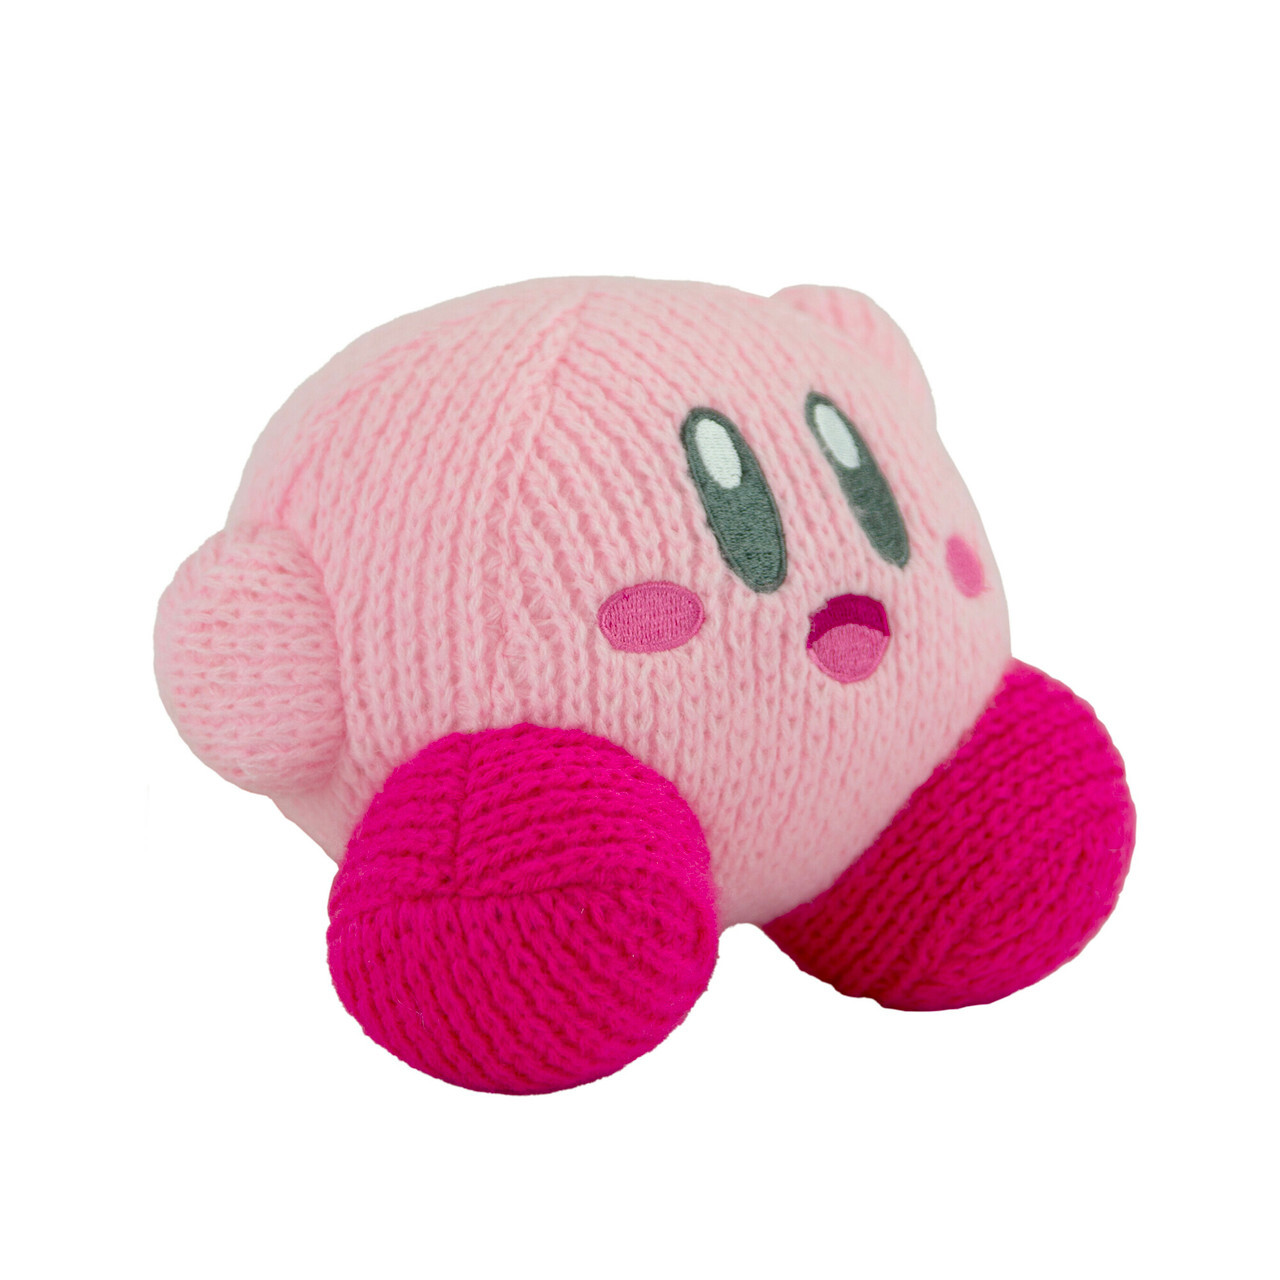 Waving Kirby Kirby’s Dreamland TOMY Nuiguru-Knit Plush (2)